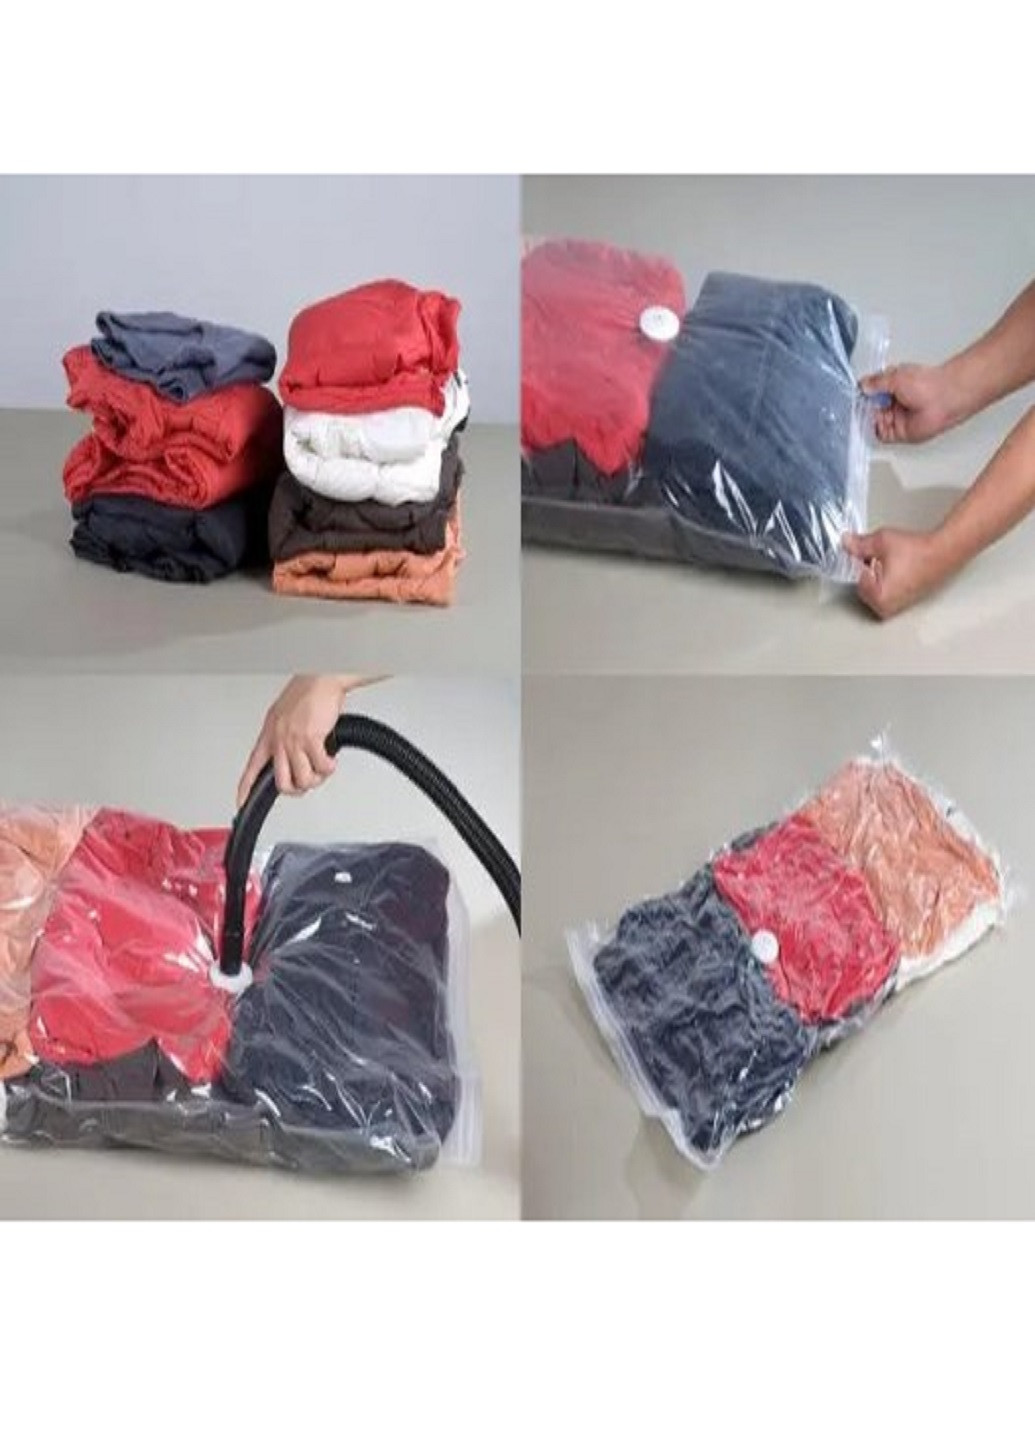 Вакуумный пакет мешок VACUUM BAG 70*100 см для хранения одежды вещей VTech (262454241)